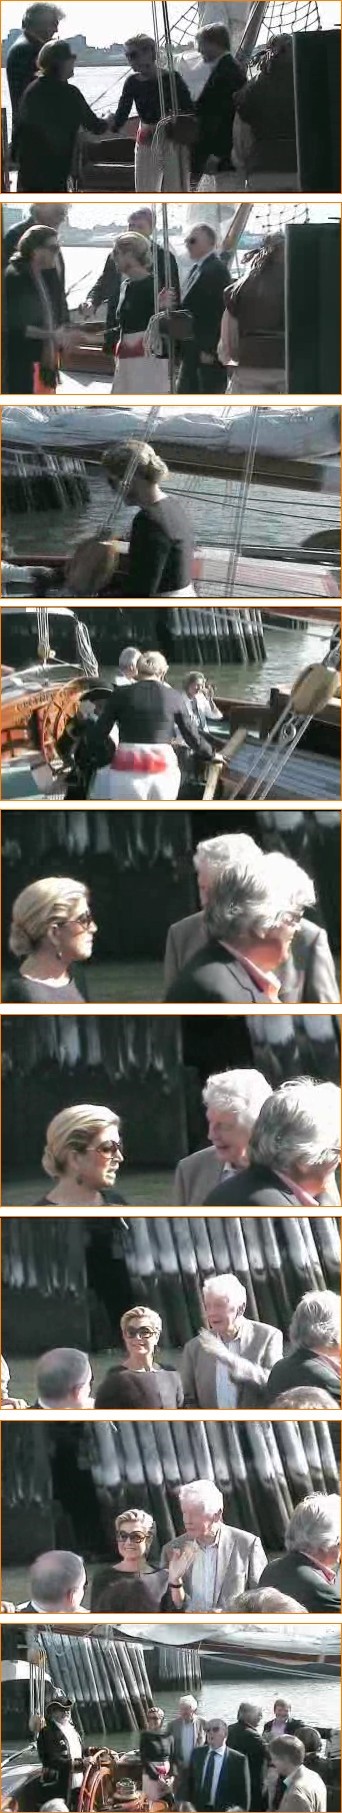 Tijdens de rondvaart staat de Prinses de praten met Wim Kok